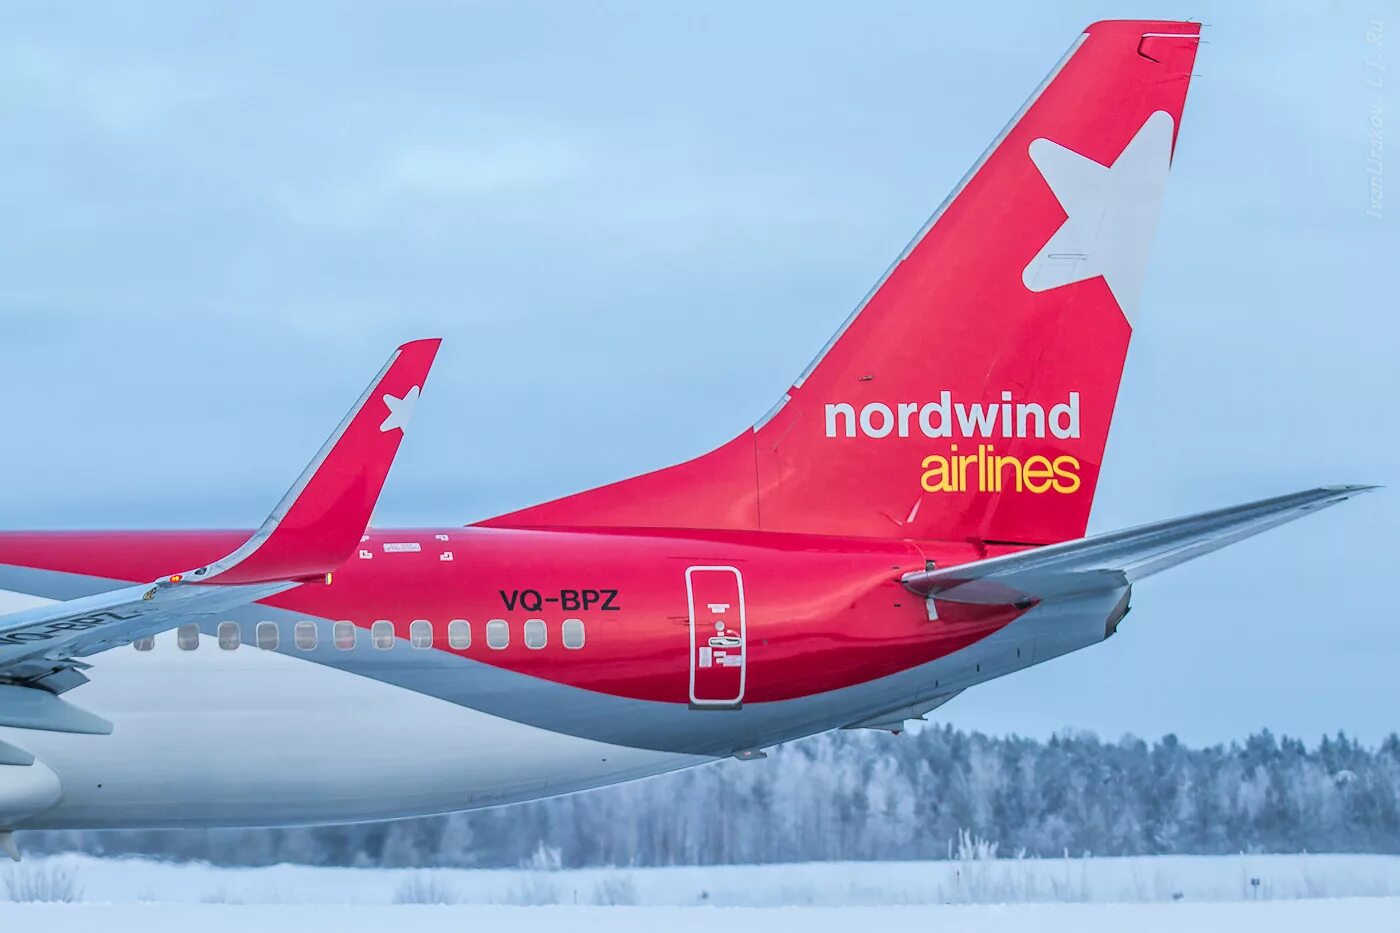 Боинг 737 Норд Винд. 737-800 Норд Винд. Авиакомпания Nordwind Airlines самолеты. Боинг 737 ред Вингс. Сайт авиакомпании nordwind airlines